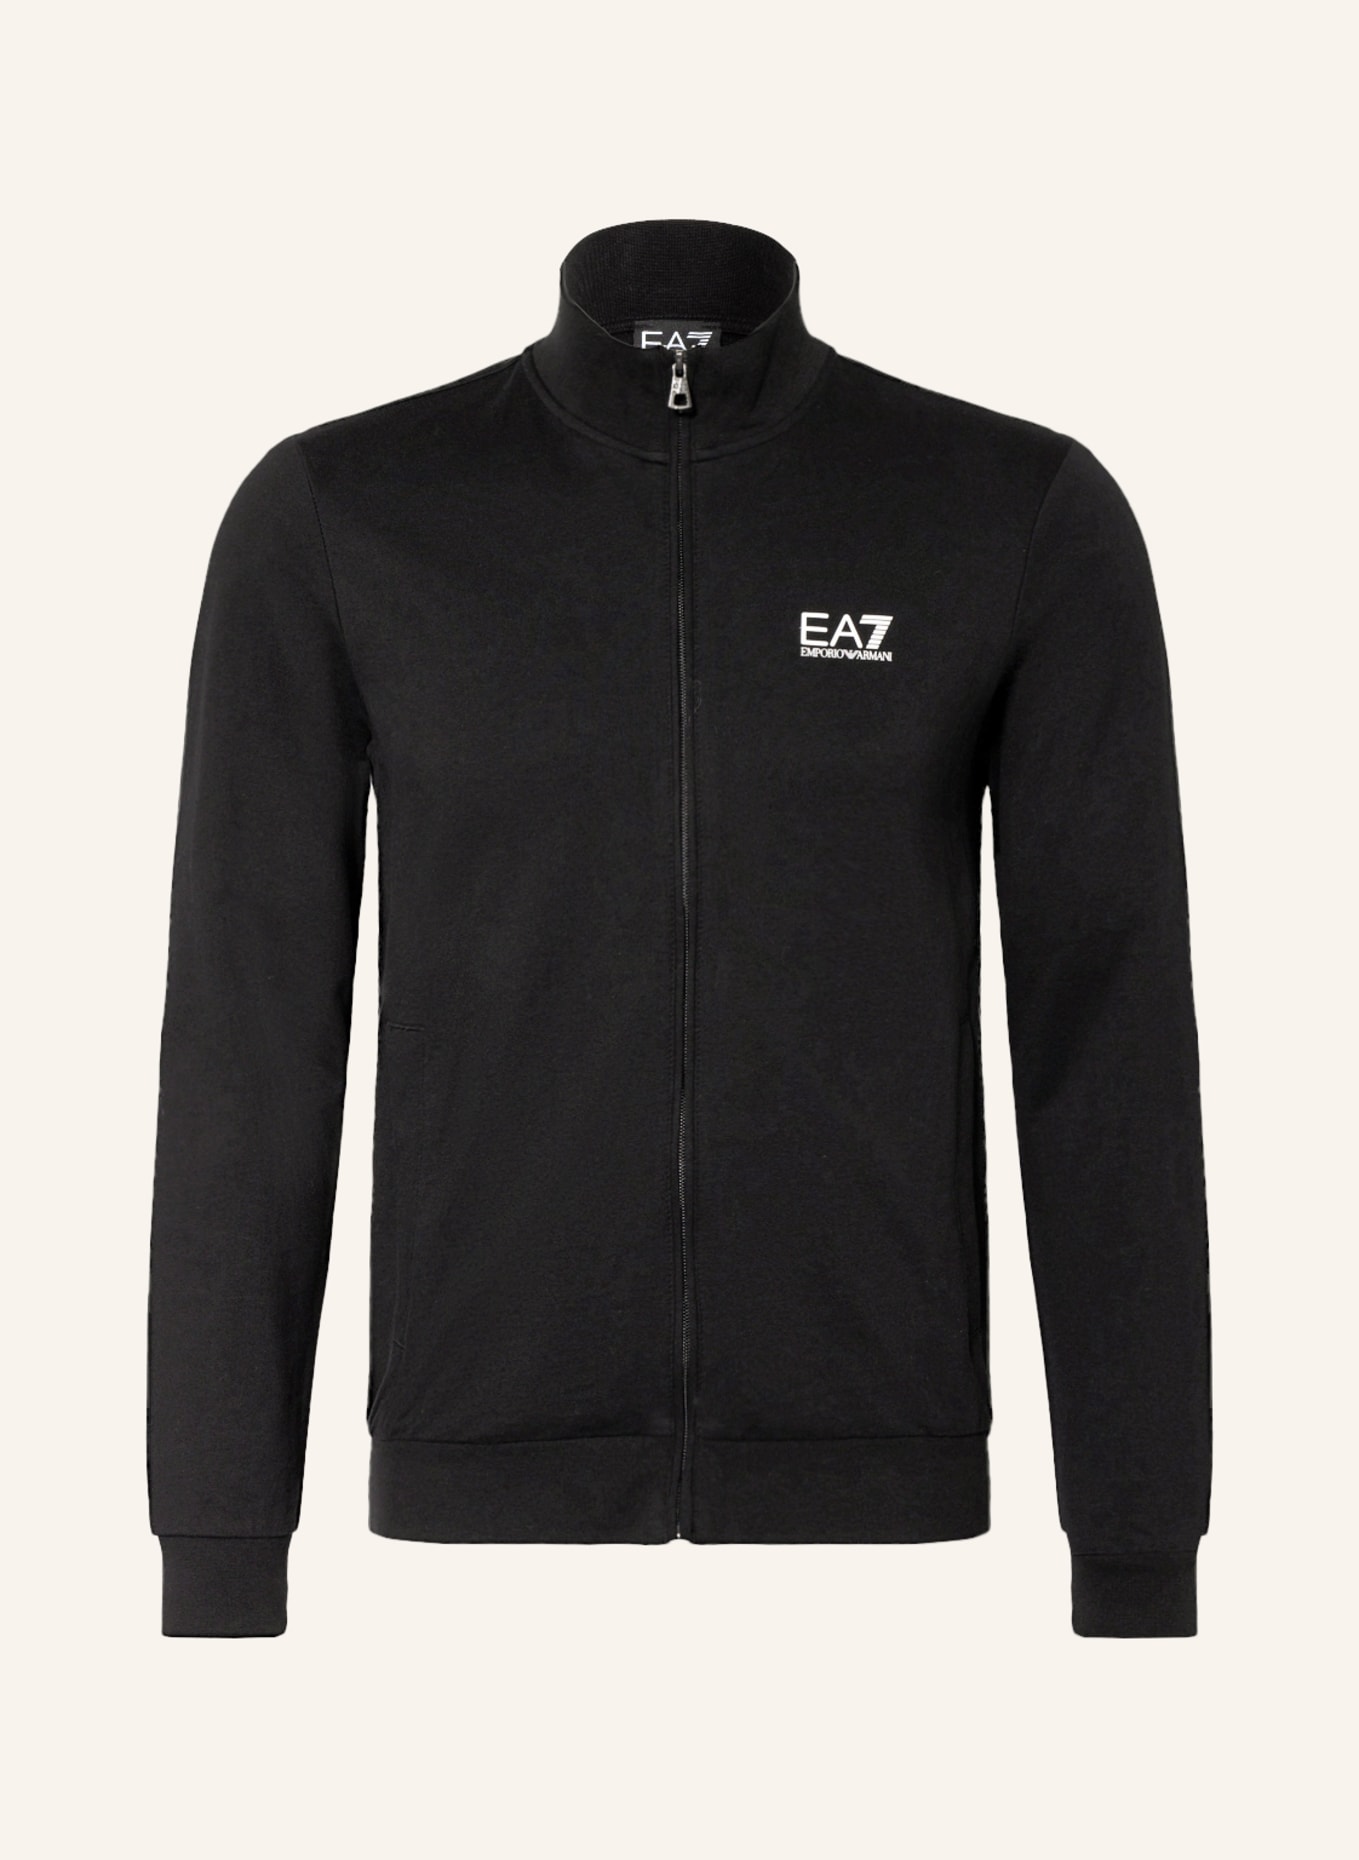 EA7 EMPORIO ARMANI Sweat jacket, Color: BLACK (Image 1)